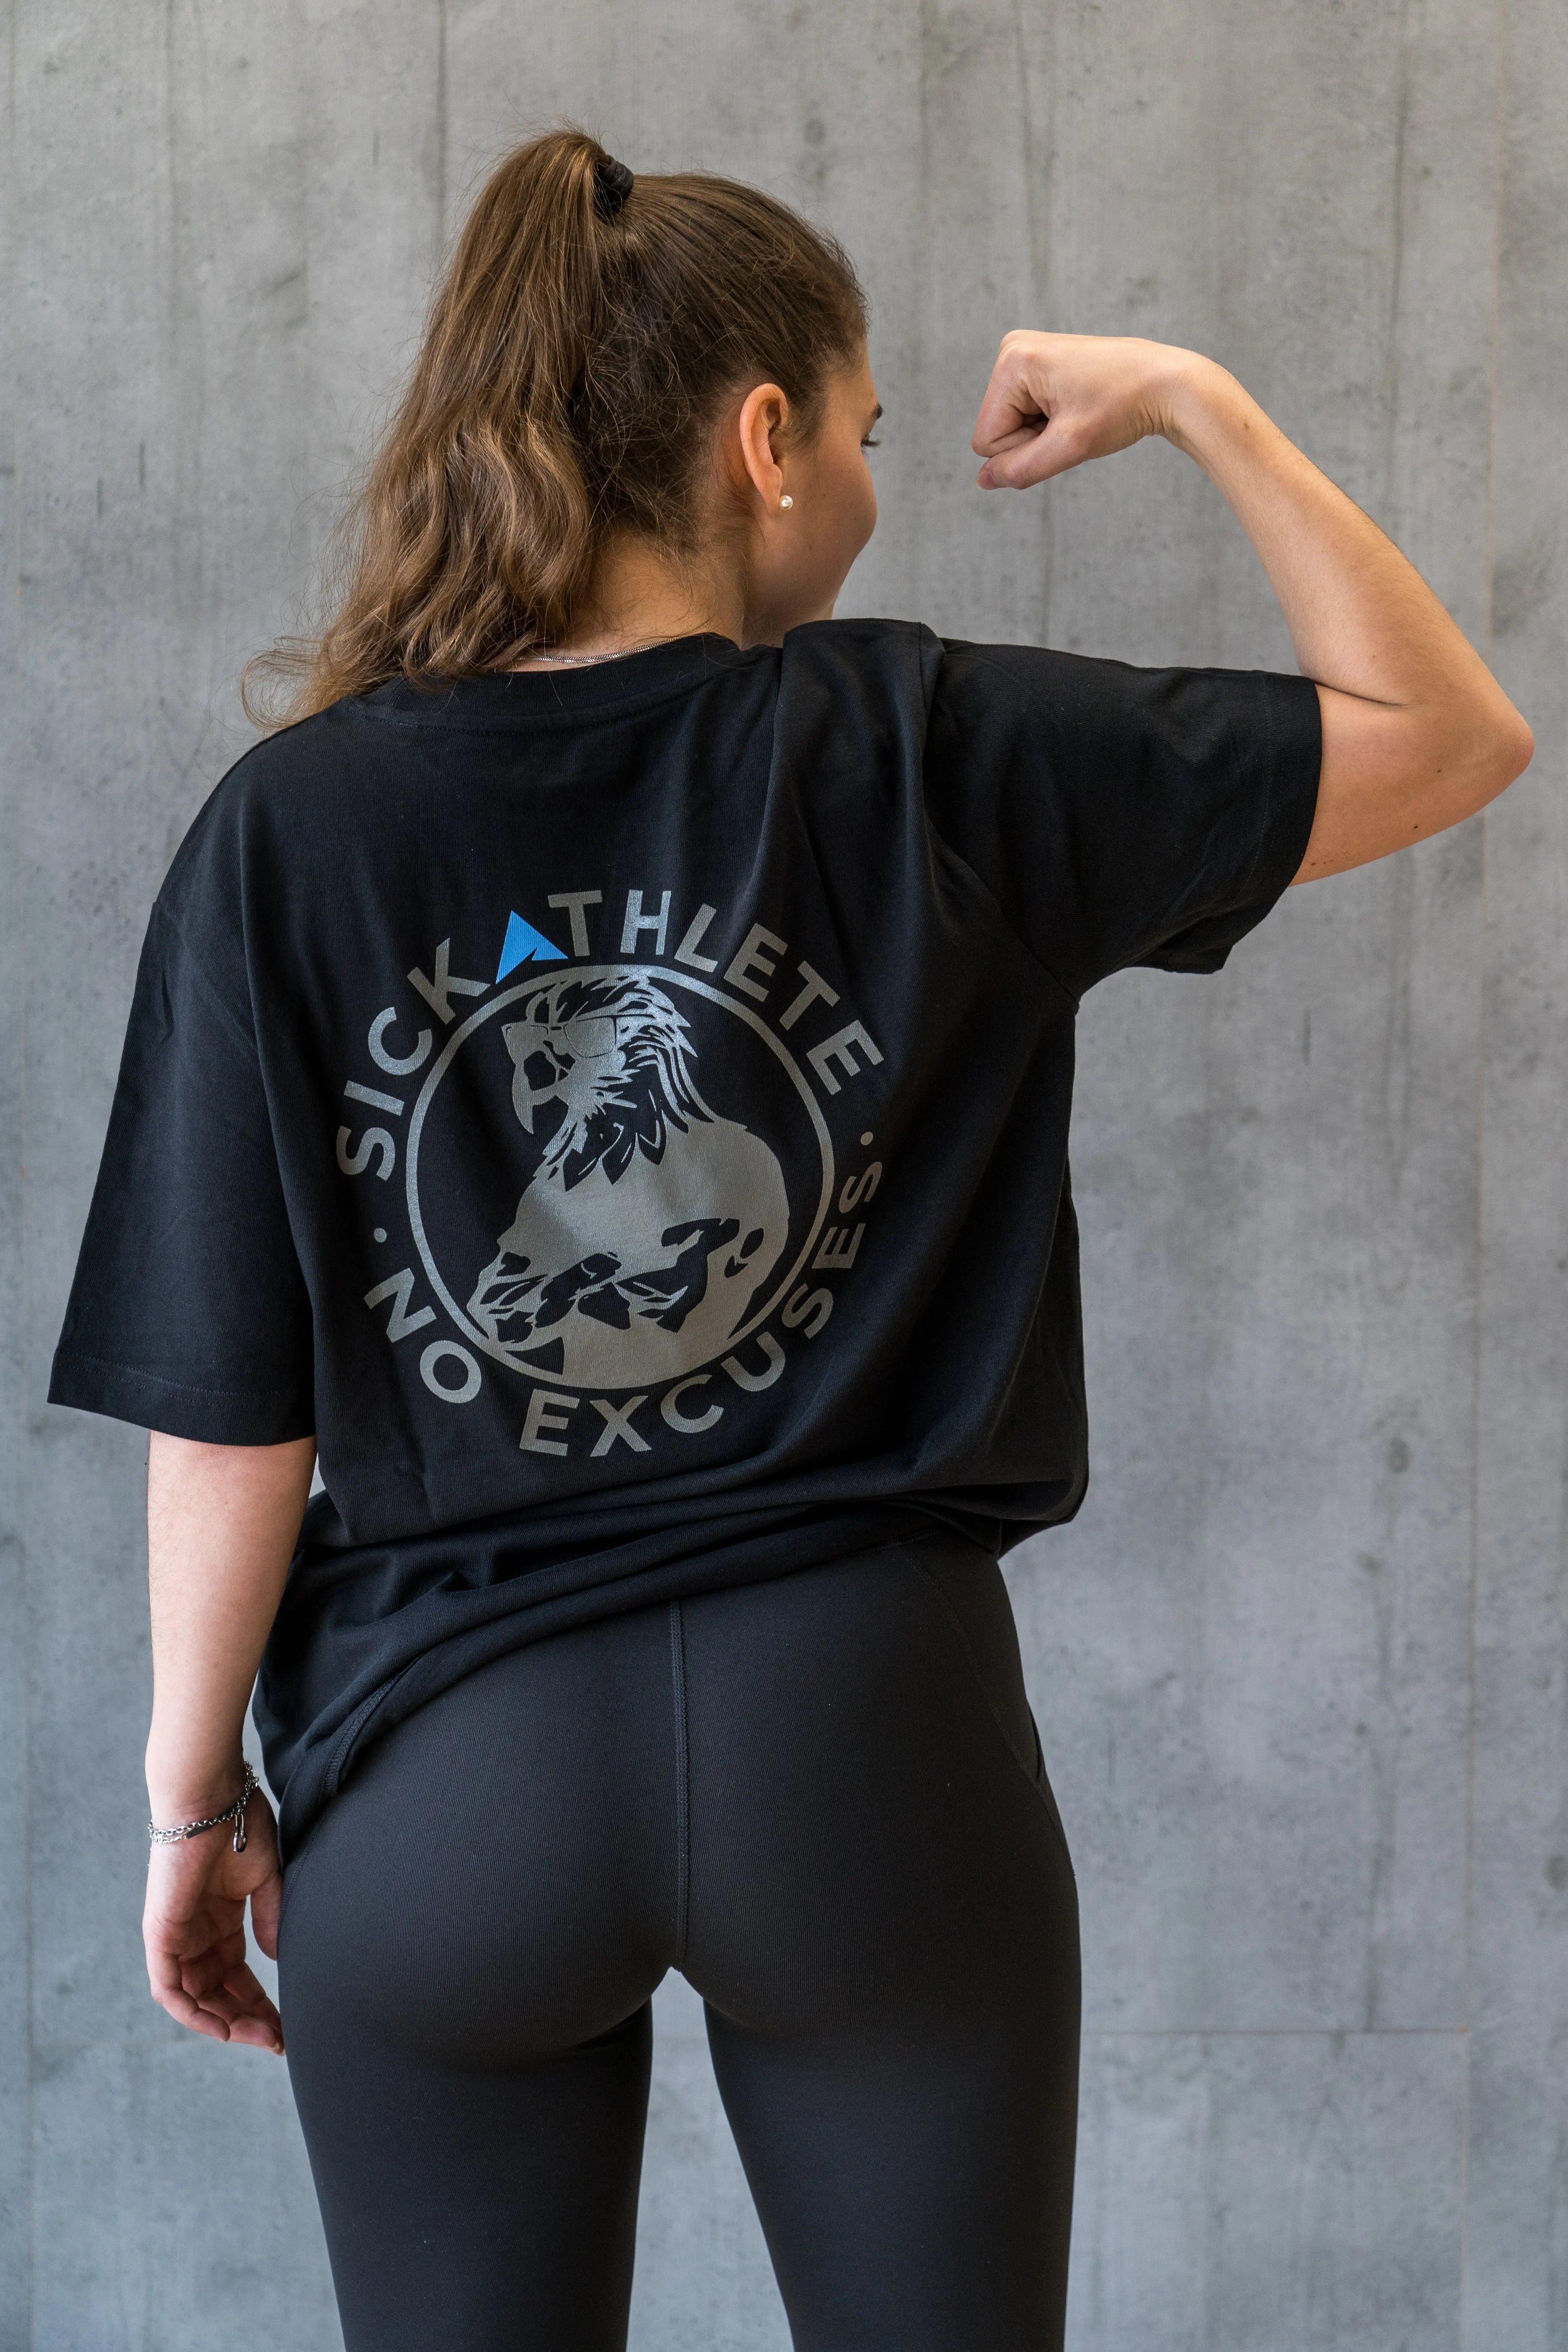 Athletin flext ihren Bizeps im PURPOSE T-Shirt von SICK ATHLETE